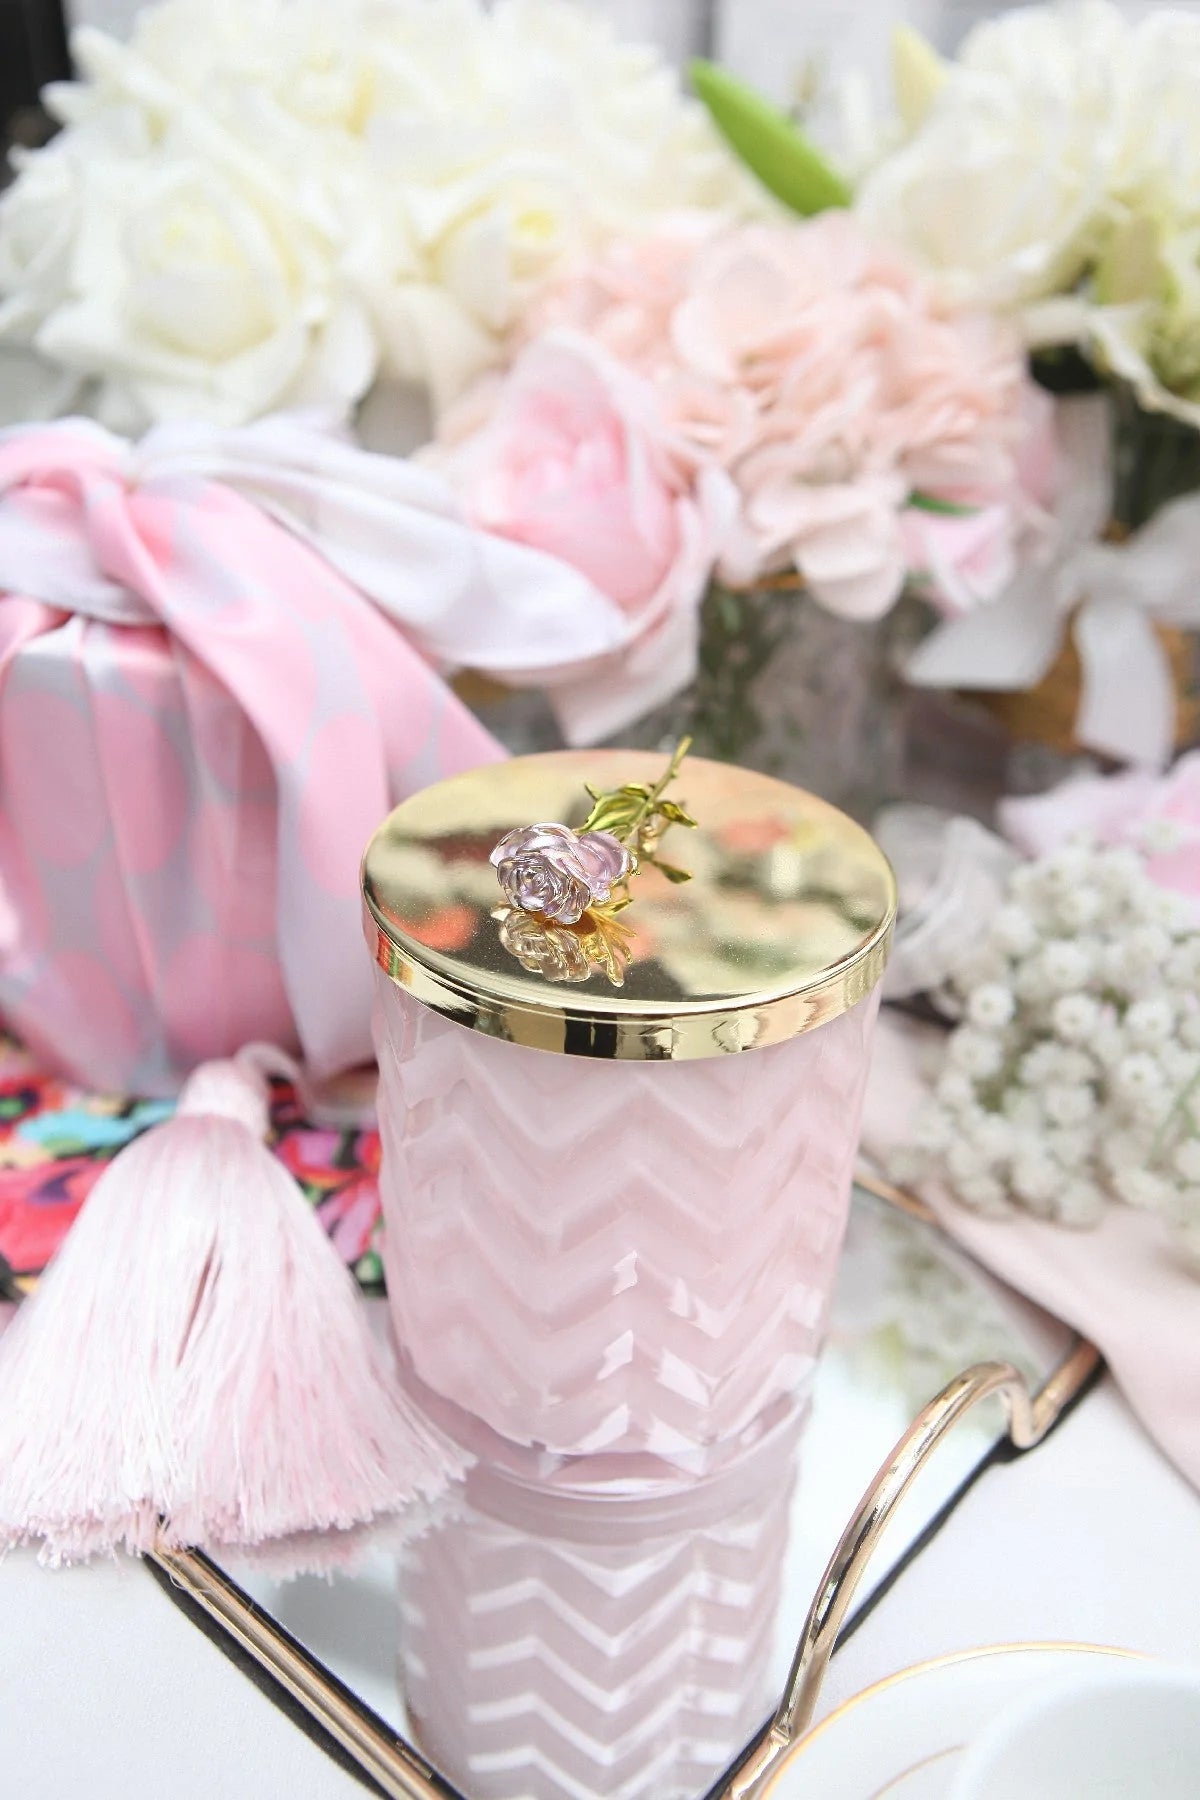 rosa herringbone duftkerze auf einem spiegeltablett, dahinter rosa und weiße duftblumen.